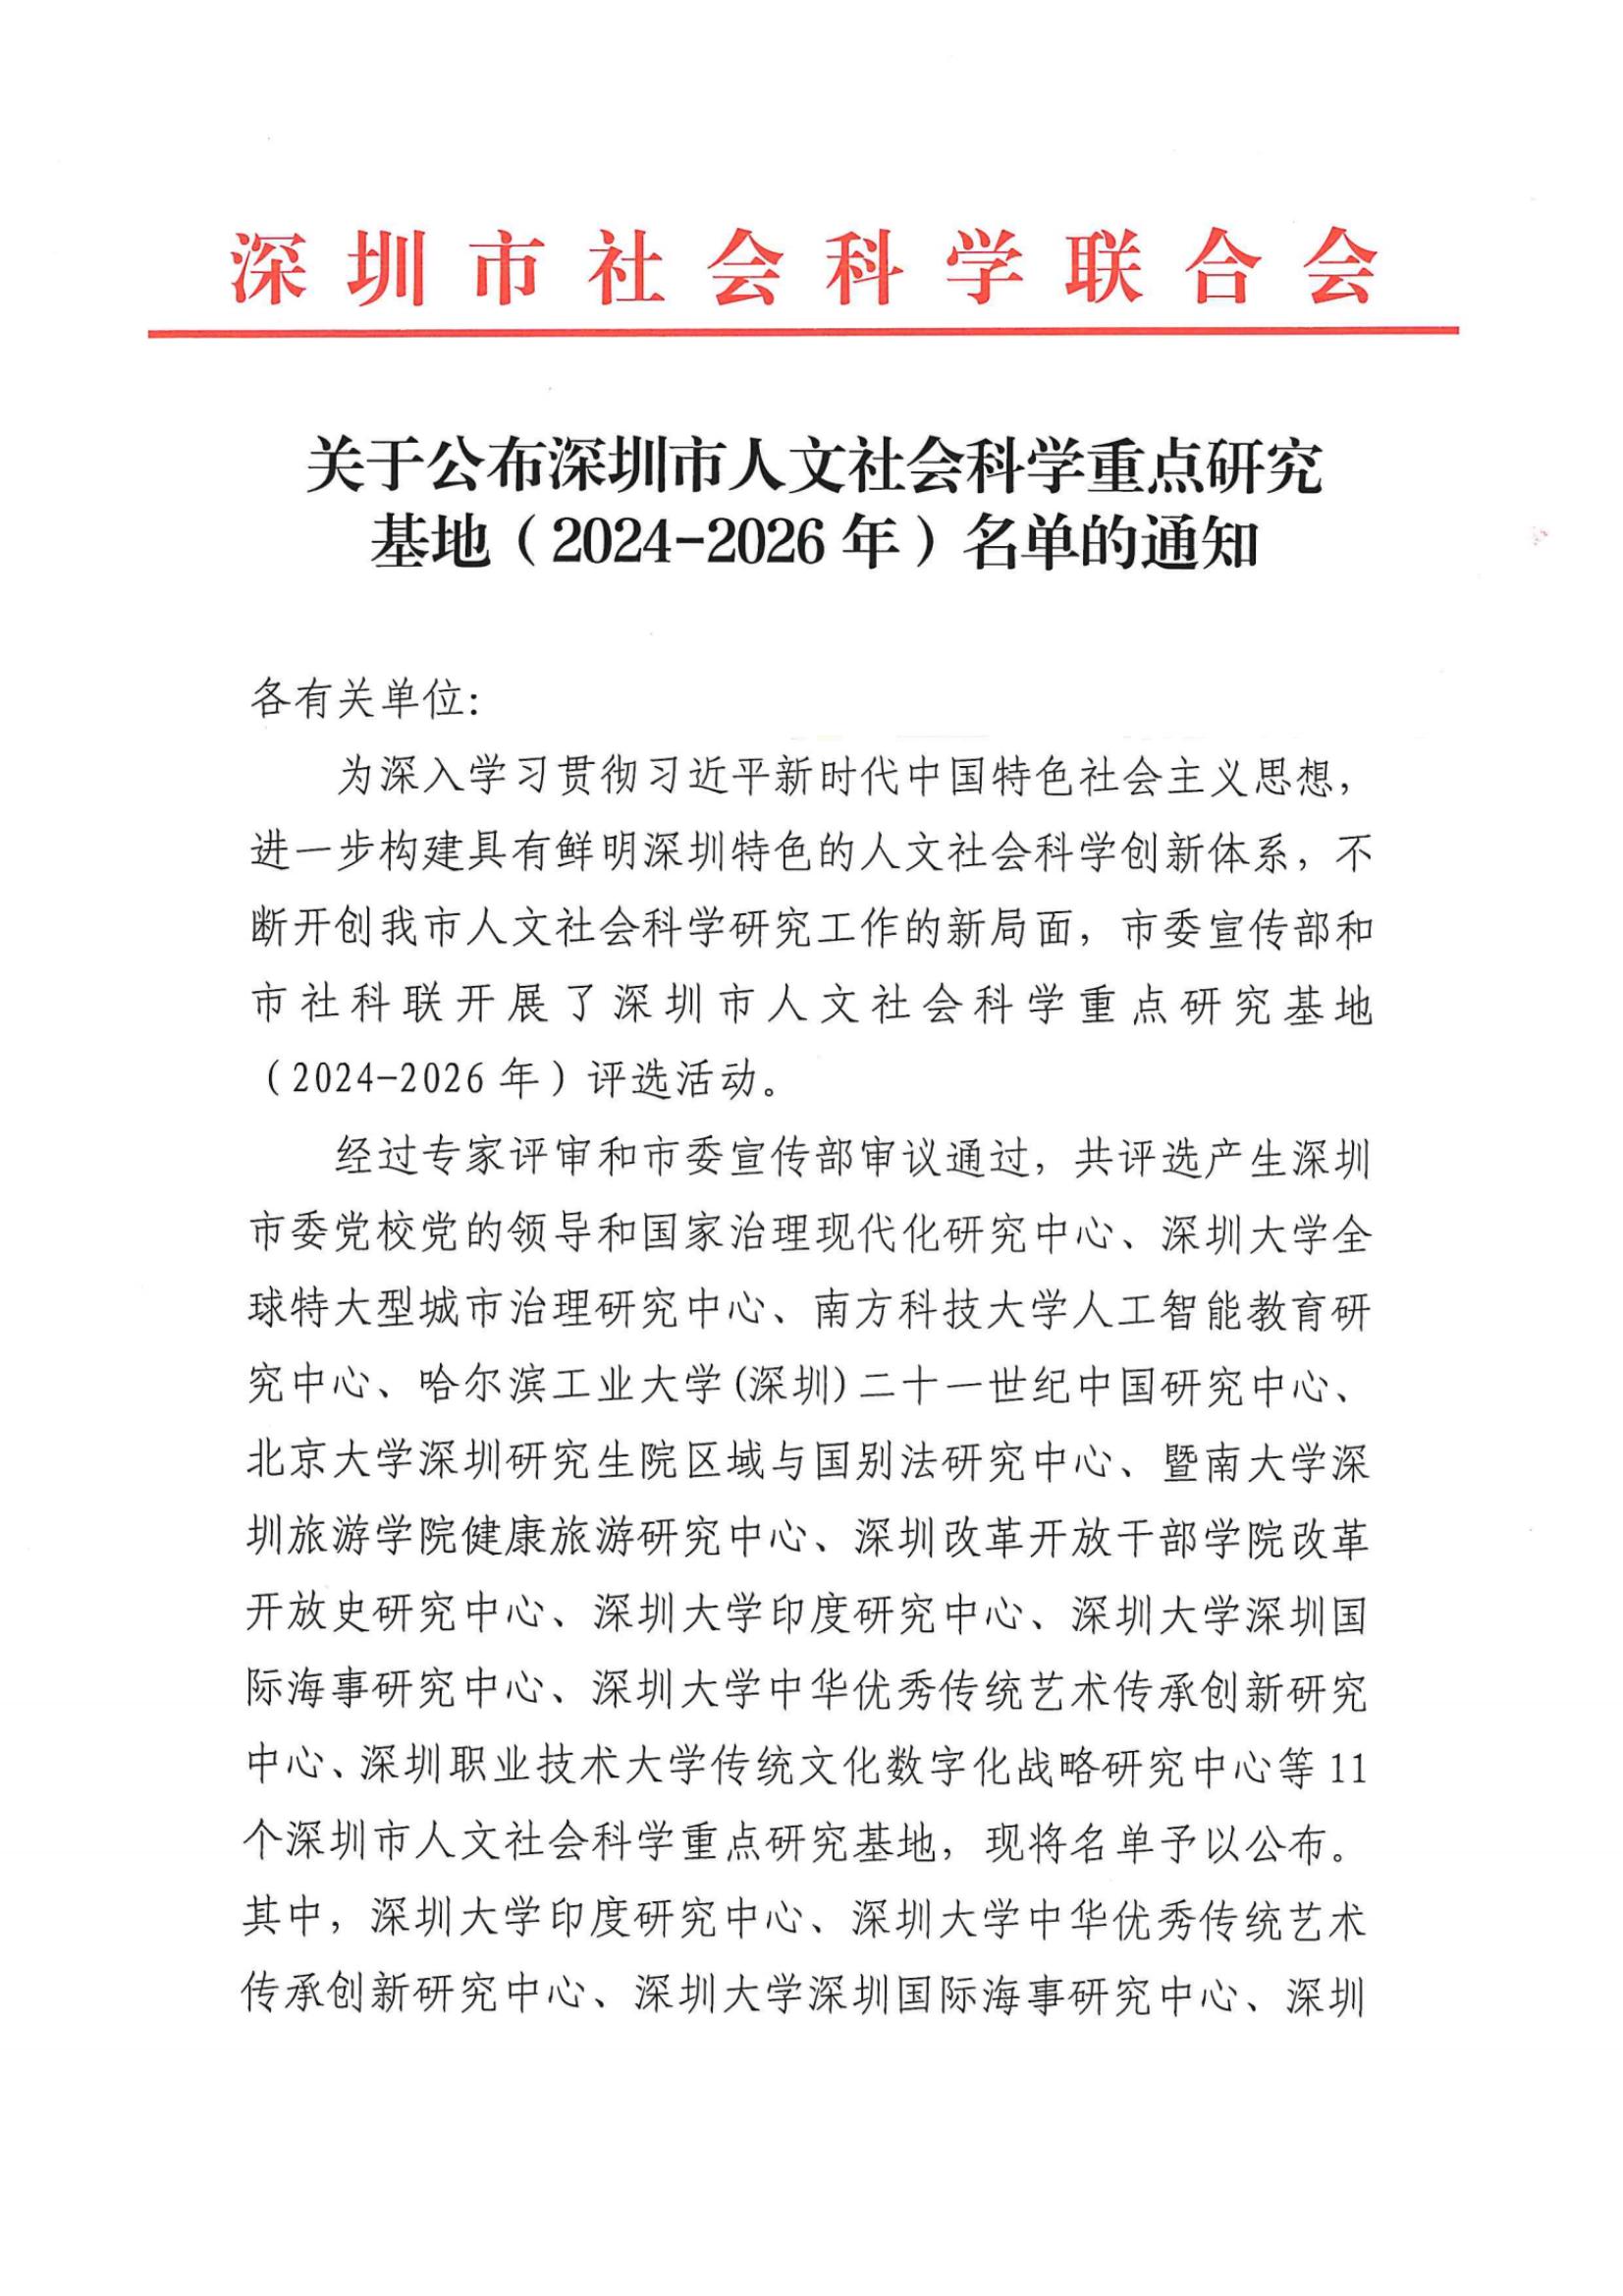 关于公布深圳市人文社会科学重点研究基地（2024-2026年）名单的通知_纯图版_00.jpg